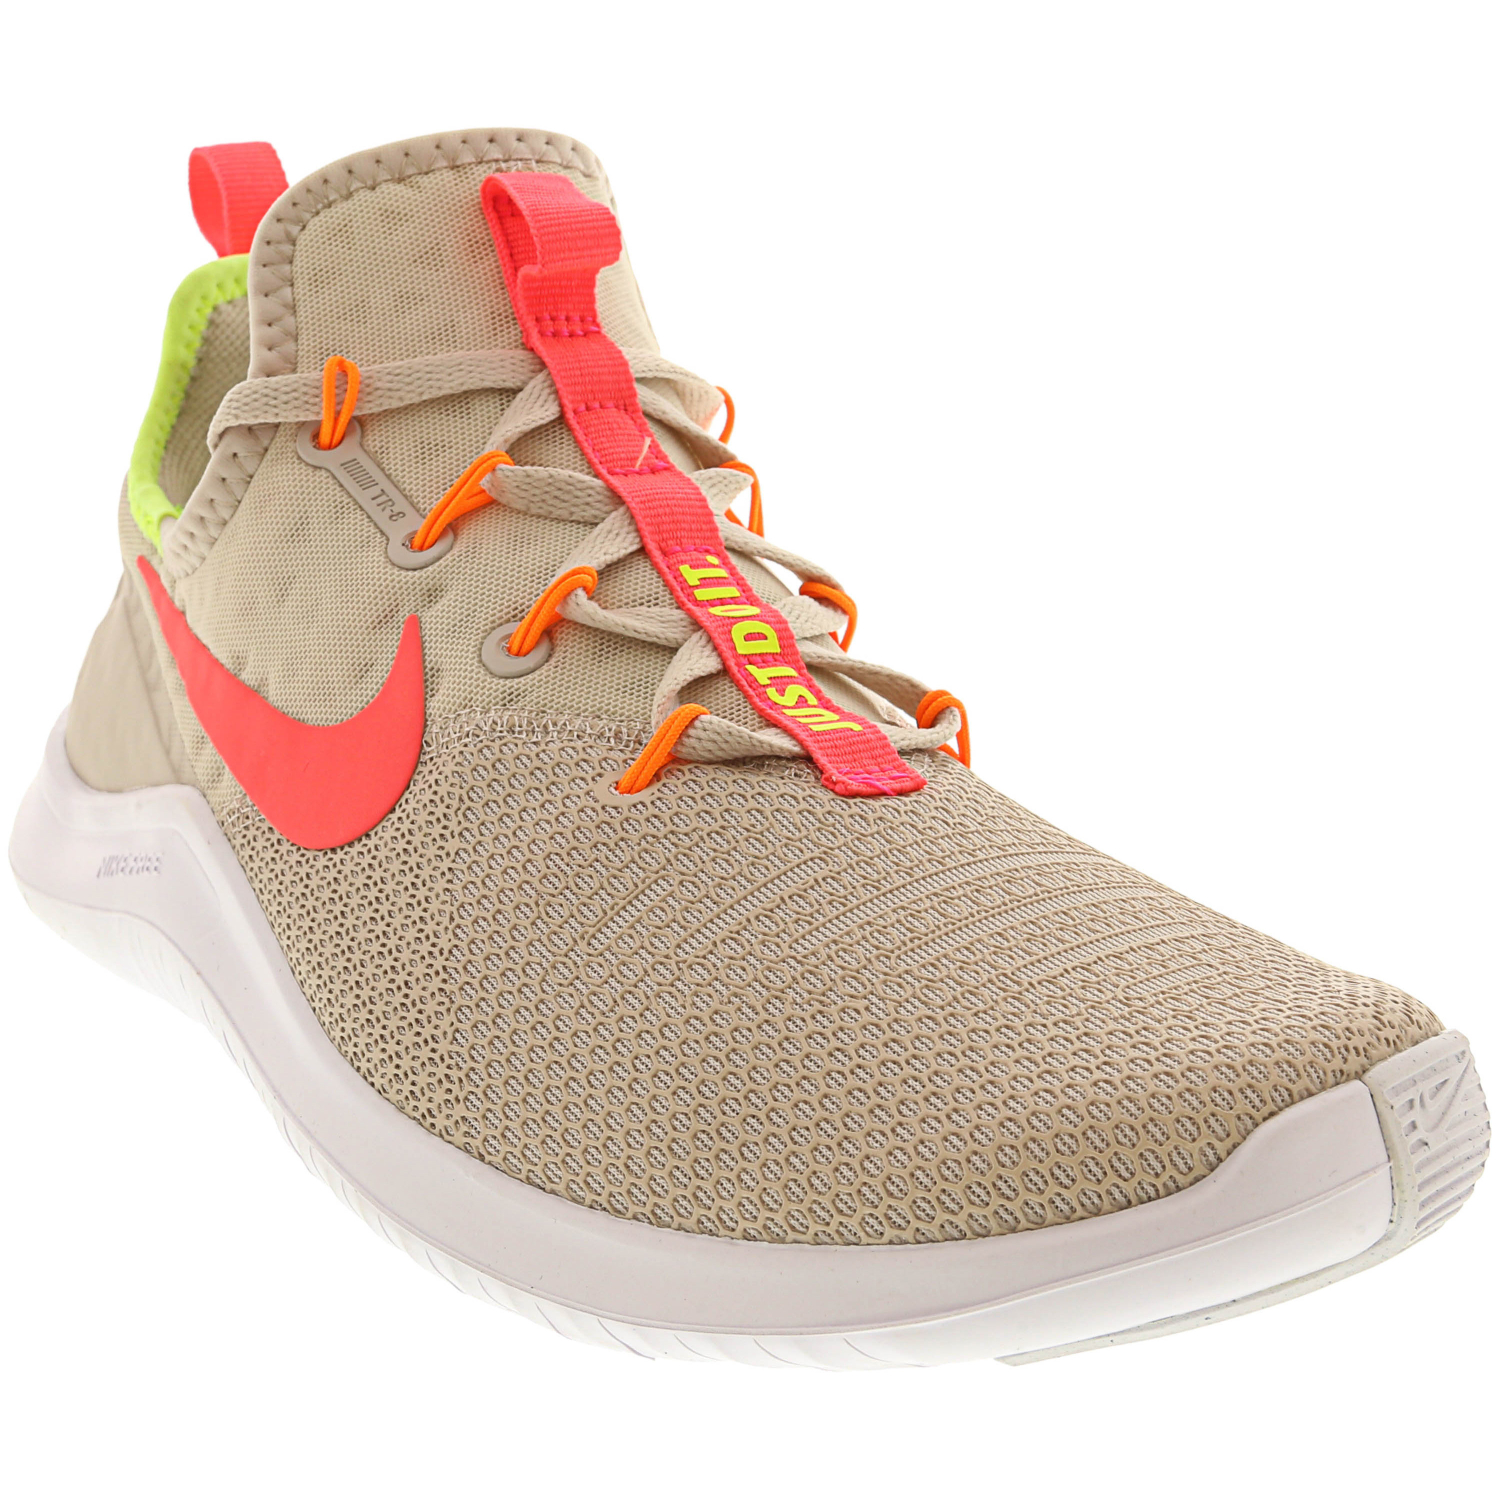  Nike Free Tr  8 Training Shoes eBay